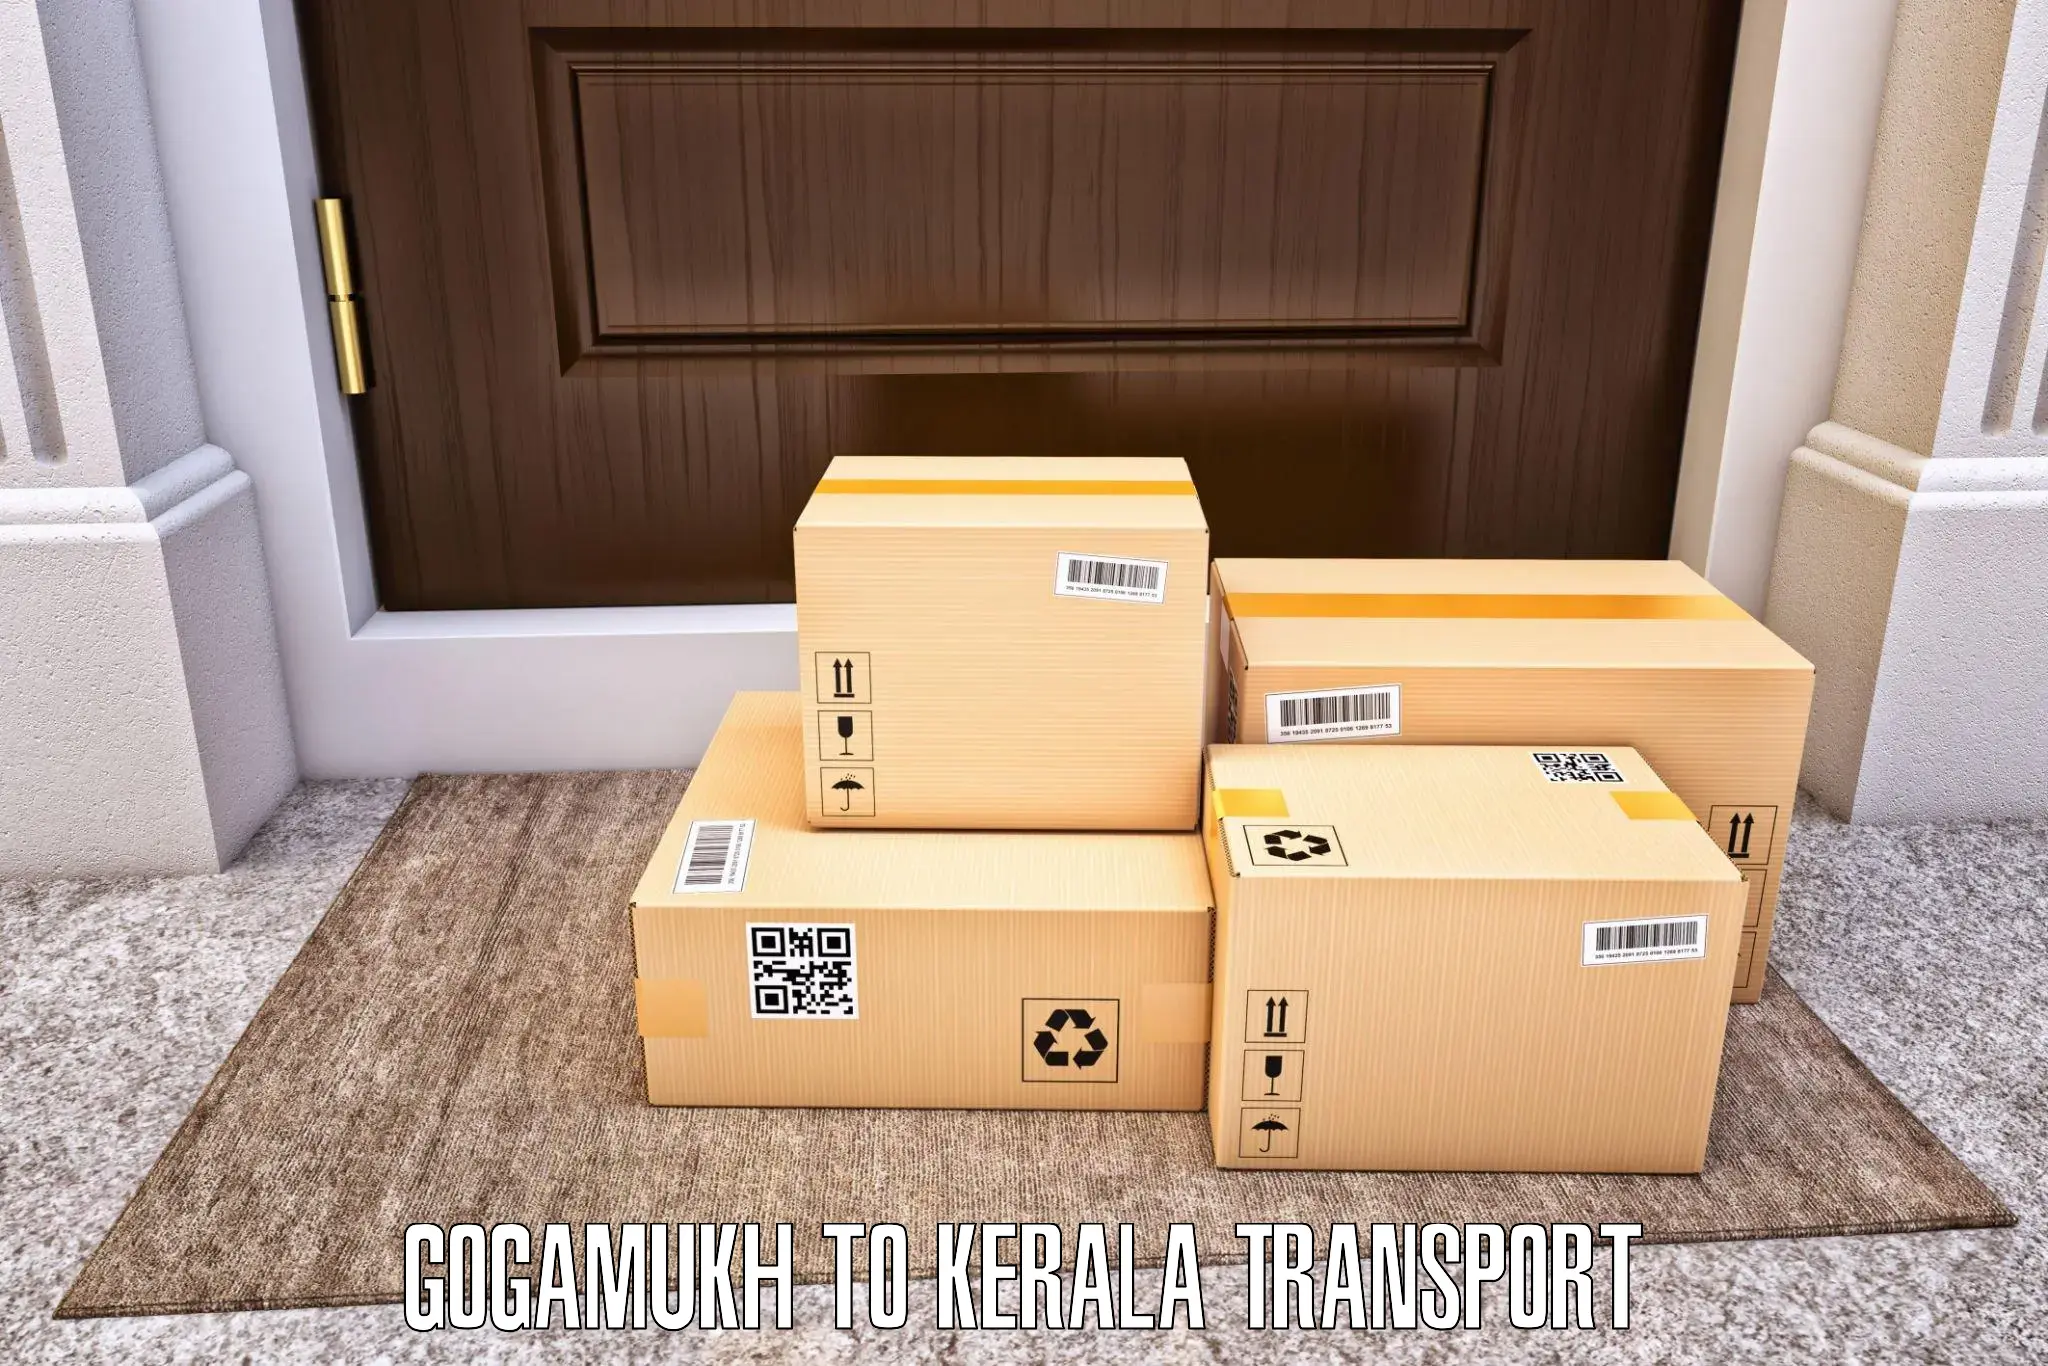 Online transport Gogamukh to Sankaramangalam